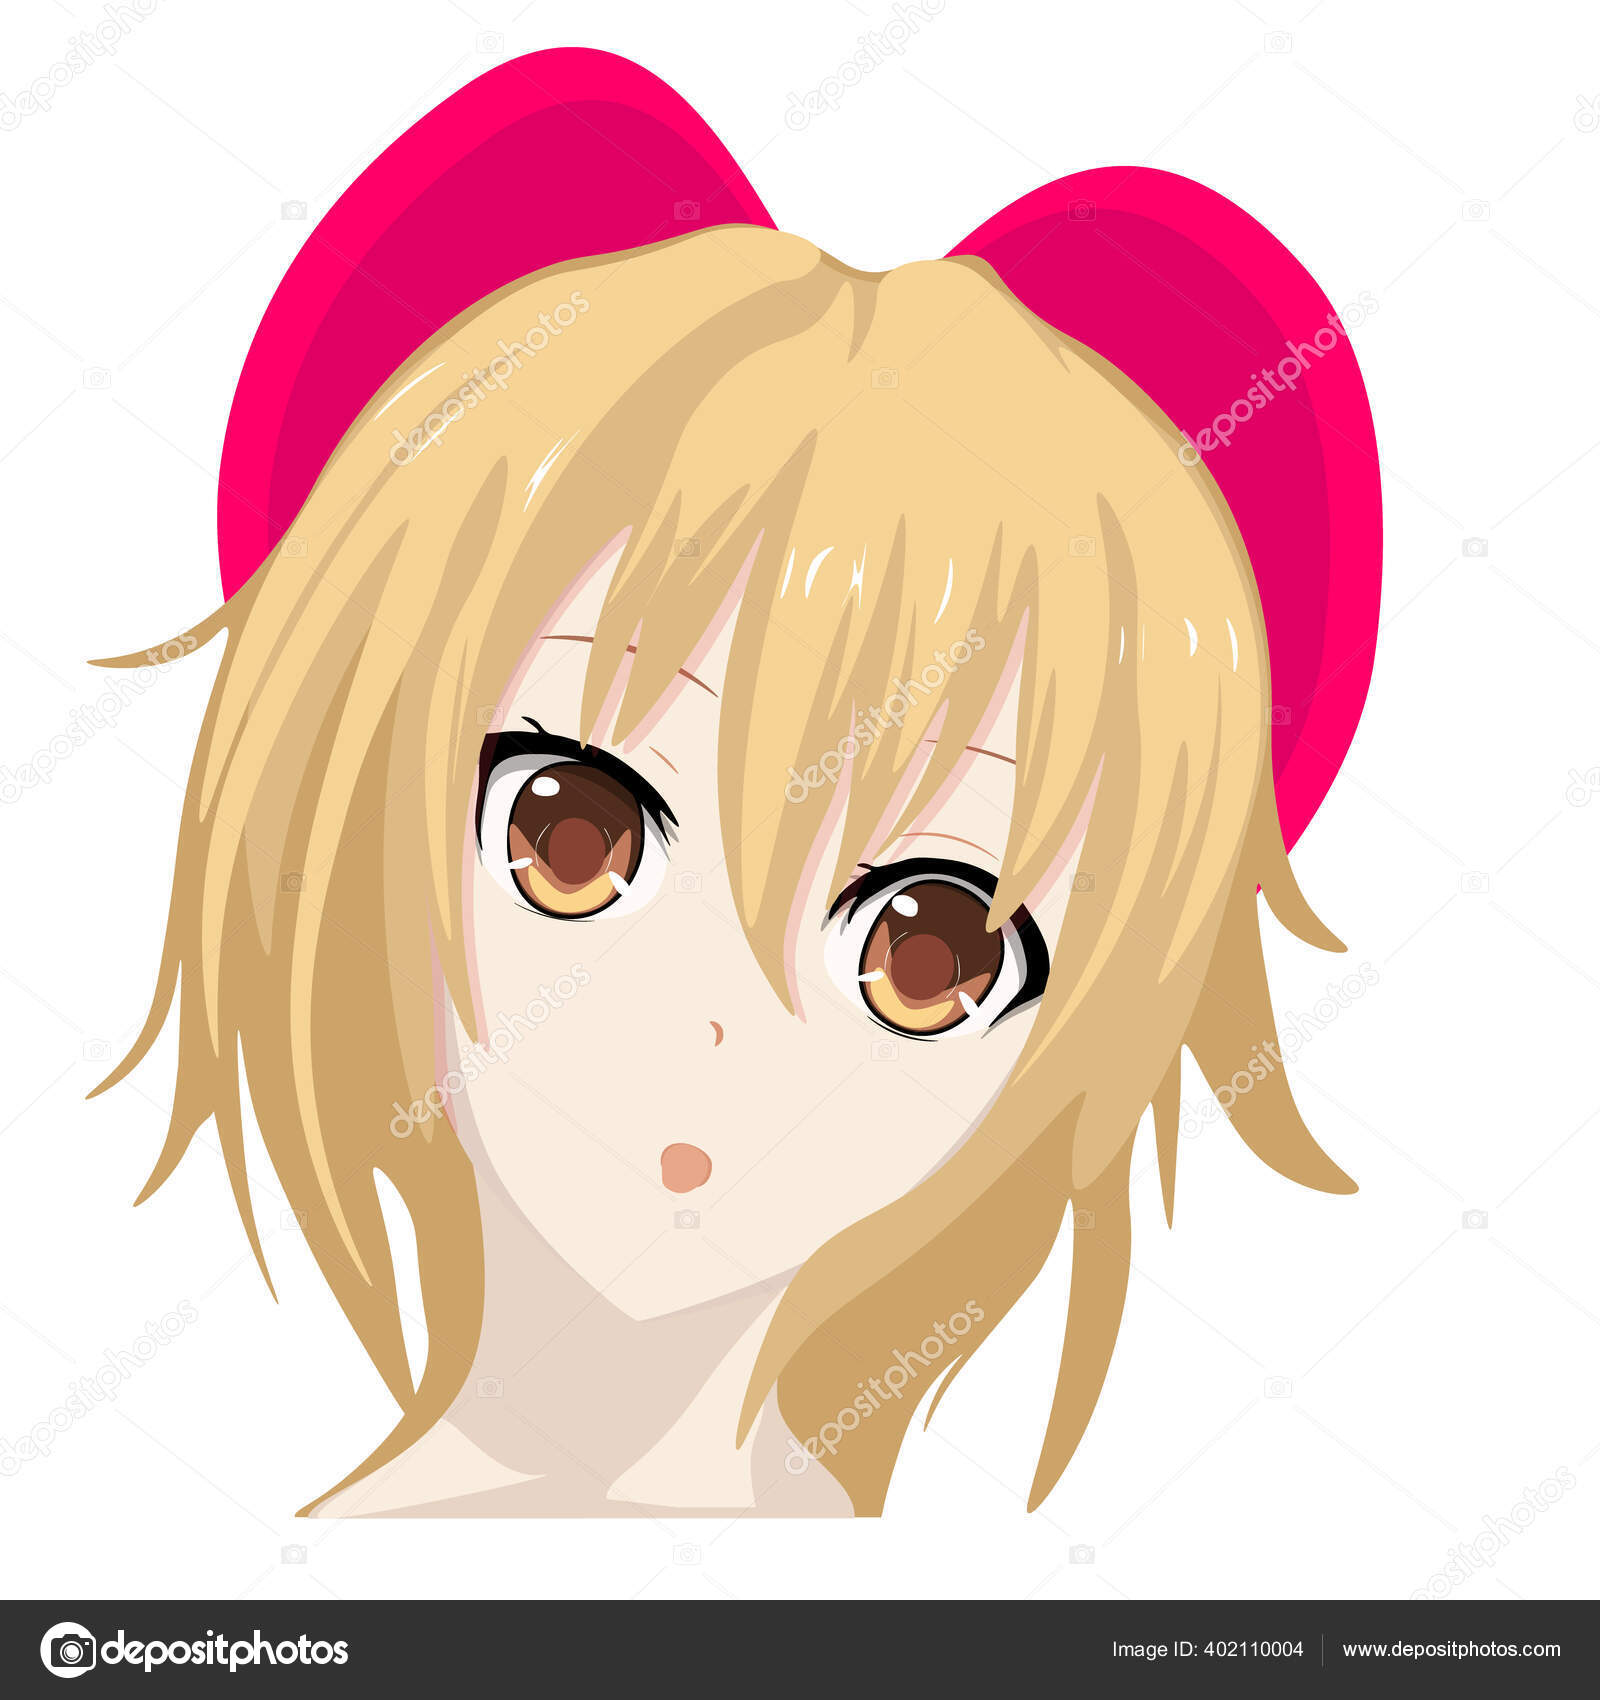 Vetor de Cute anime girl icon portrait. Contour vector